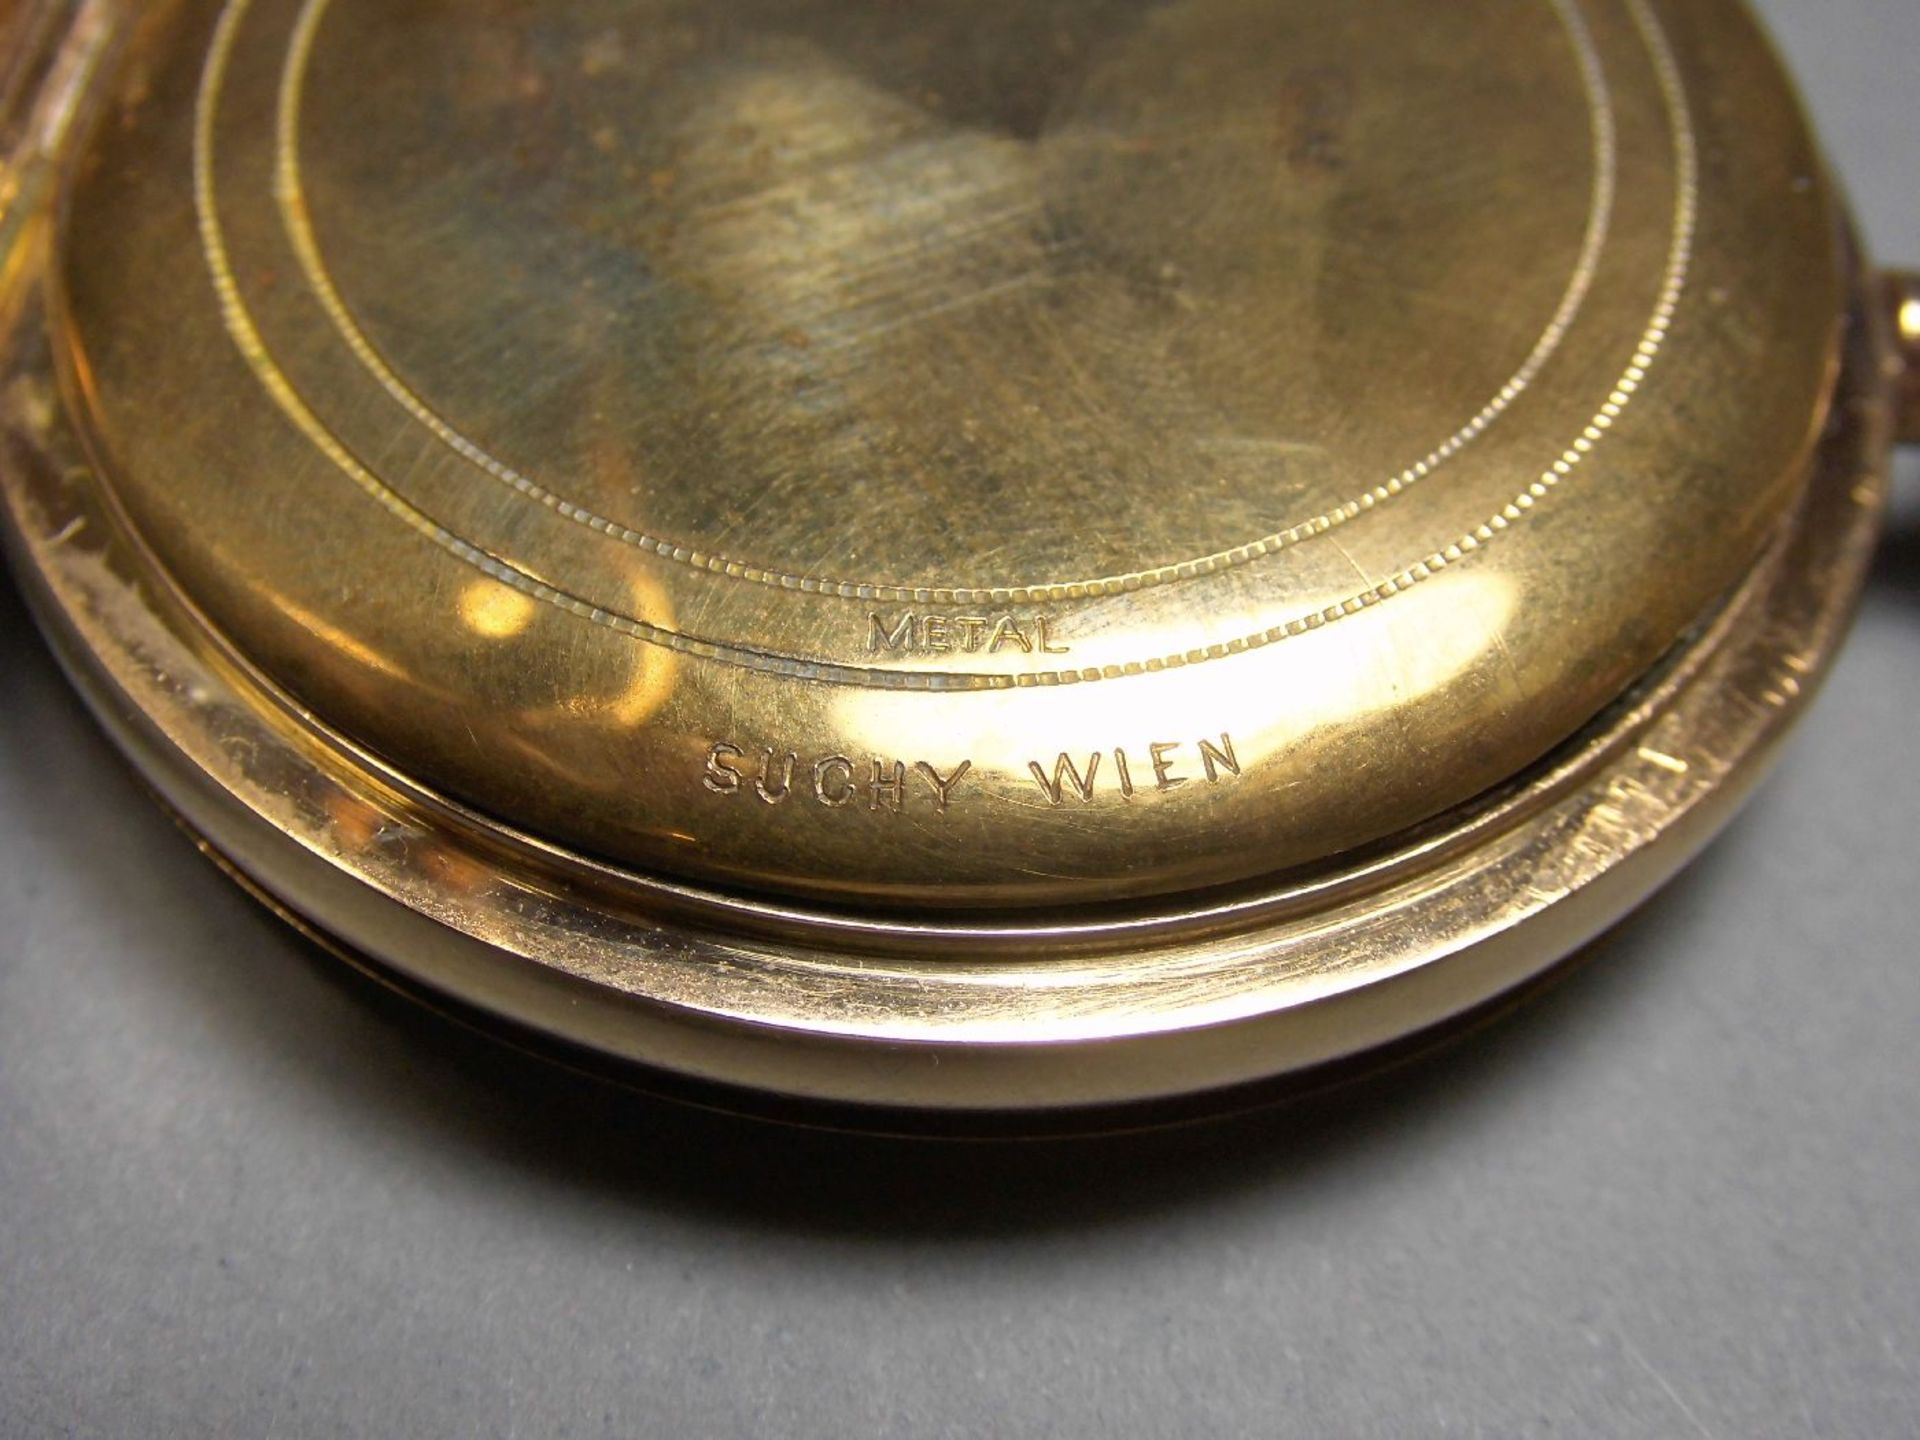 TASCHENUHR / pocketwatch, 14 kt. Gold, Staubdeckel Metall. Weißes Zifferblatt, kleine Sekunde bei - Image 6 of 7